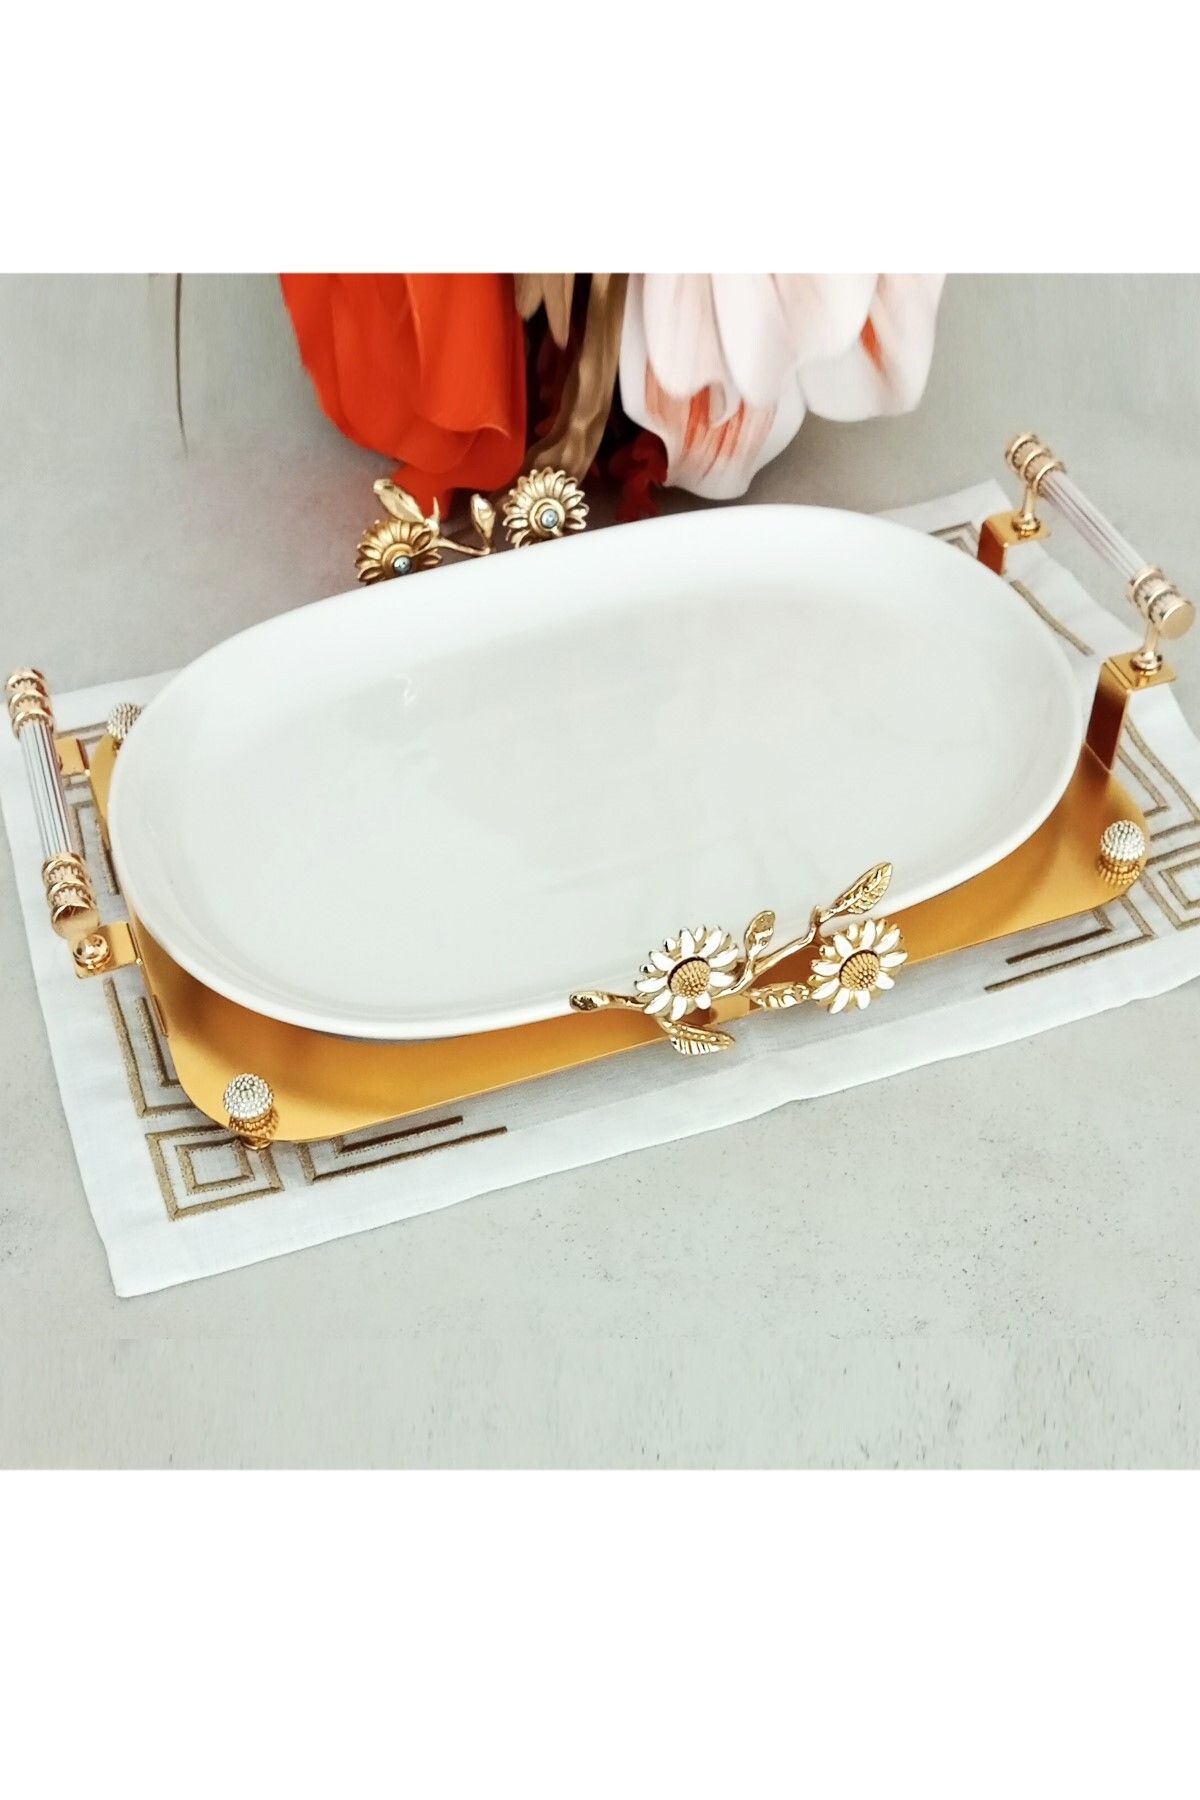 CAŞ DEKORASYON Papatya Modeli Oval Porselen Sunum Tabağı Servis Tabağı Sunumluk-37 cm